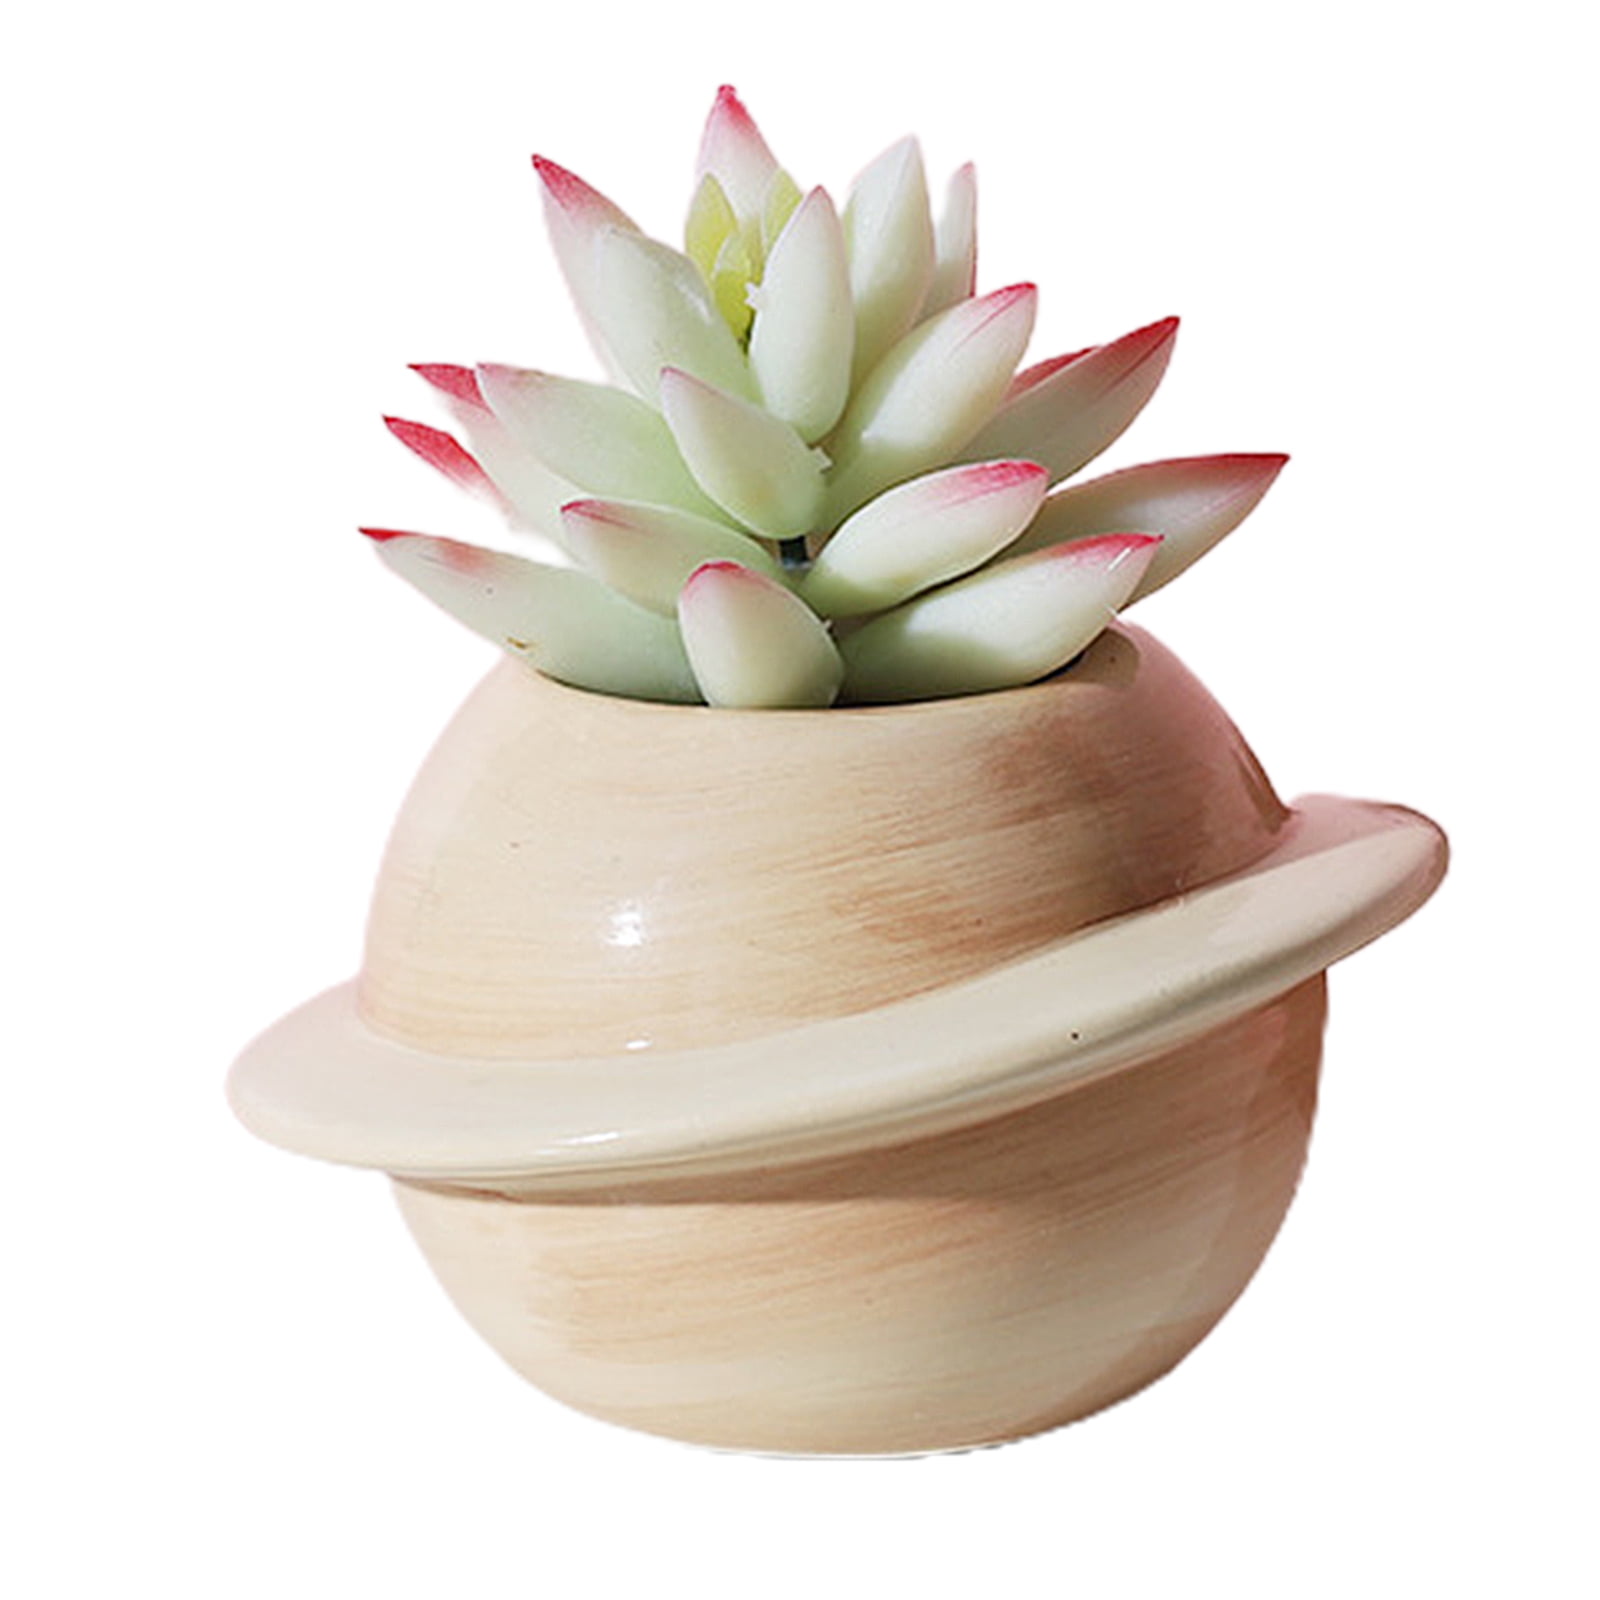 Plant Pot Small Ceramic Flower Garden Mini Bonsai Container Planter Home Decor 